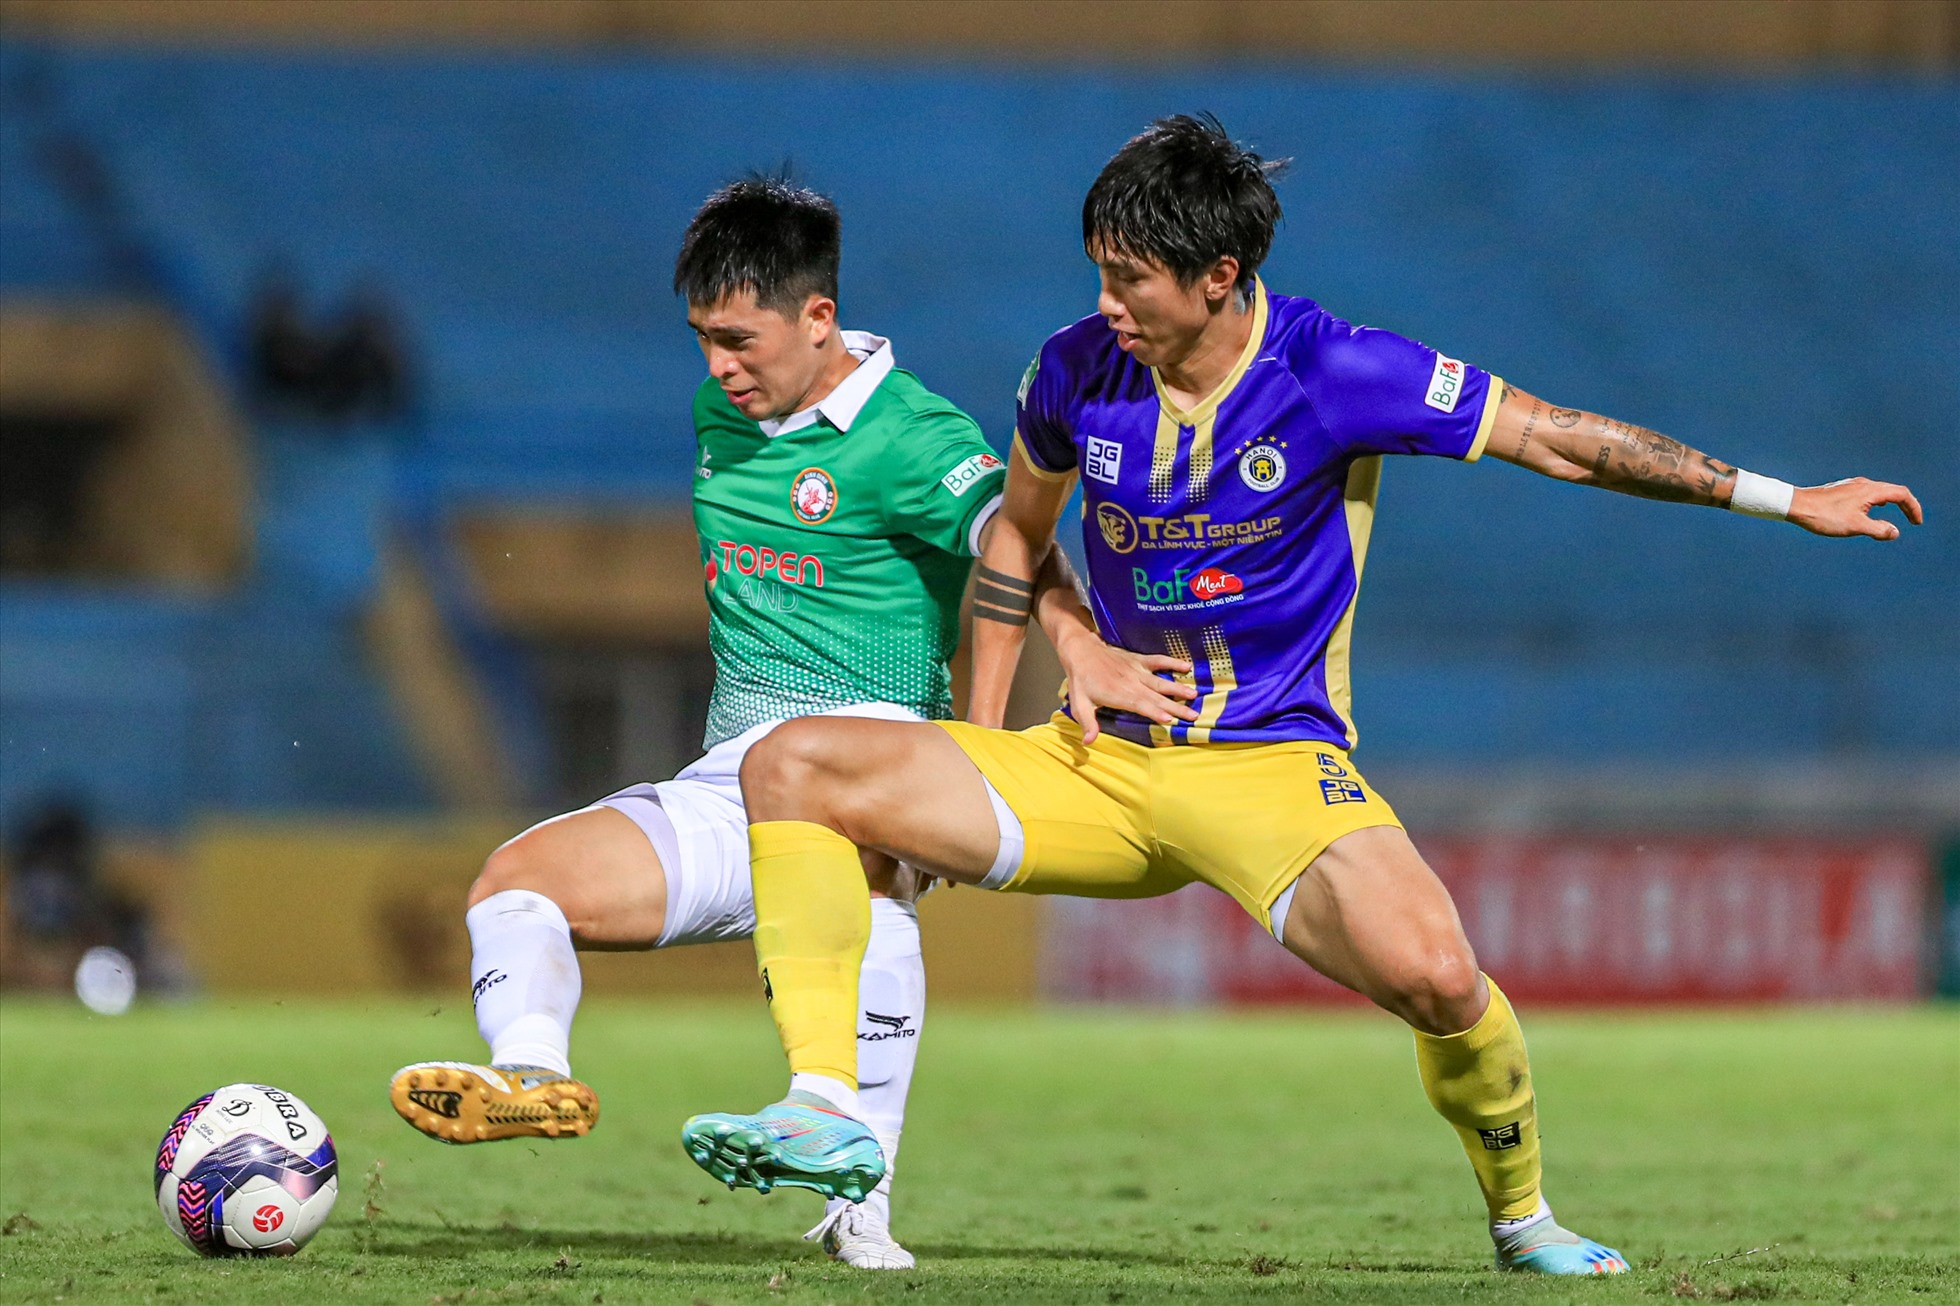 Bị dẫn bàn, câu lạc bộ Bình Định dồn lên tấn công nhằm tìm kiếm bàn thắng gỡ hoà. Tuy nhiên, đây cũng là cơ hội để đội chủ sân Hàng Đẫy thực hiện những đường phản công.